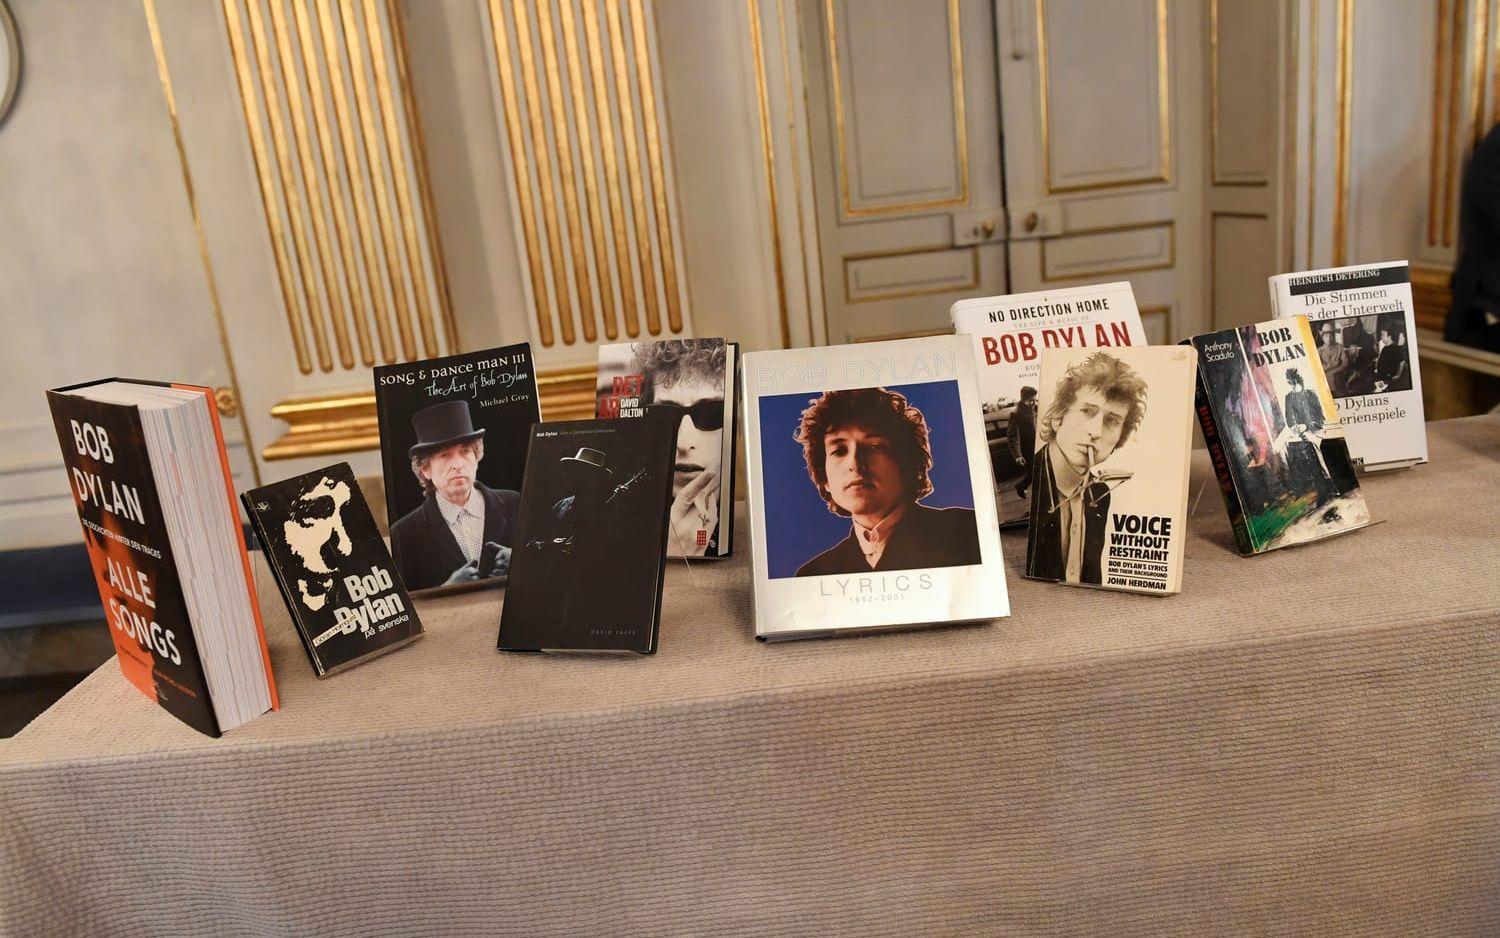 2016 tilldelades Bob Dylan Nobelpriset i litteratur. ”The philosophy of modern song” är den första boken som ges ut av Dylan sedan han fick priset.